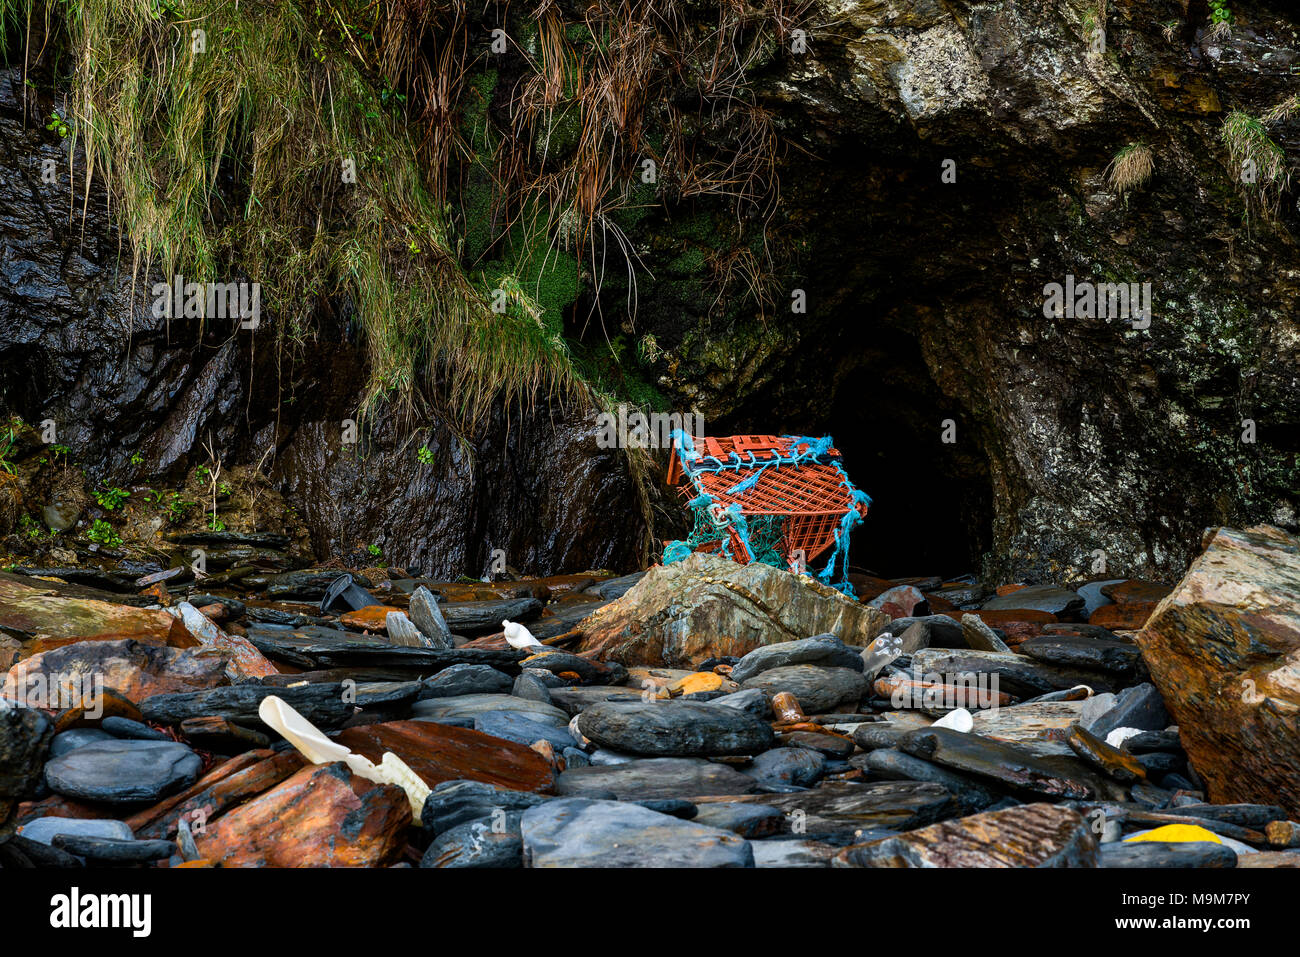 Un regard désespéré que des centaines de gros morceaux de plastique était parsemé le long des côtes de l'iconicité Cornwalls belles plages. Banque D'Images